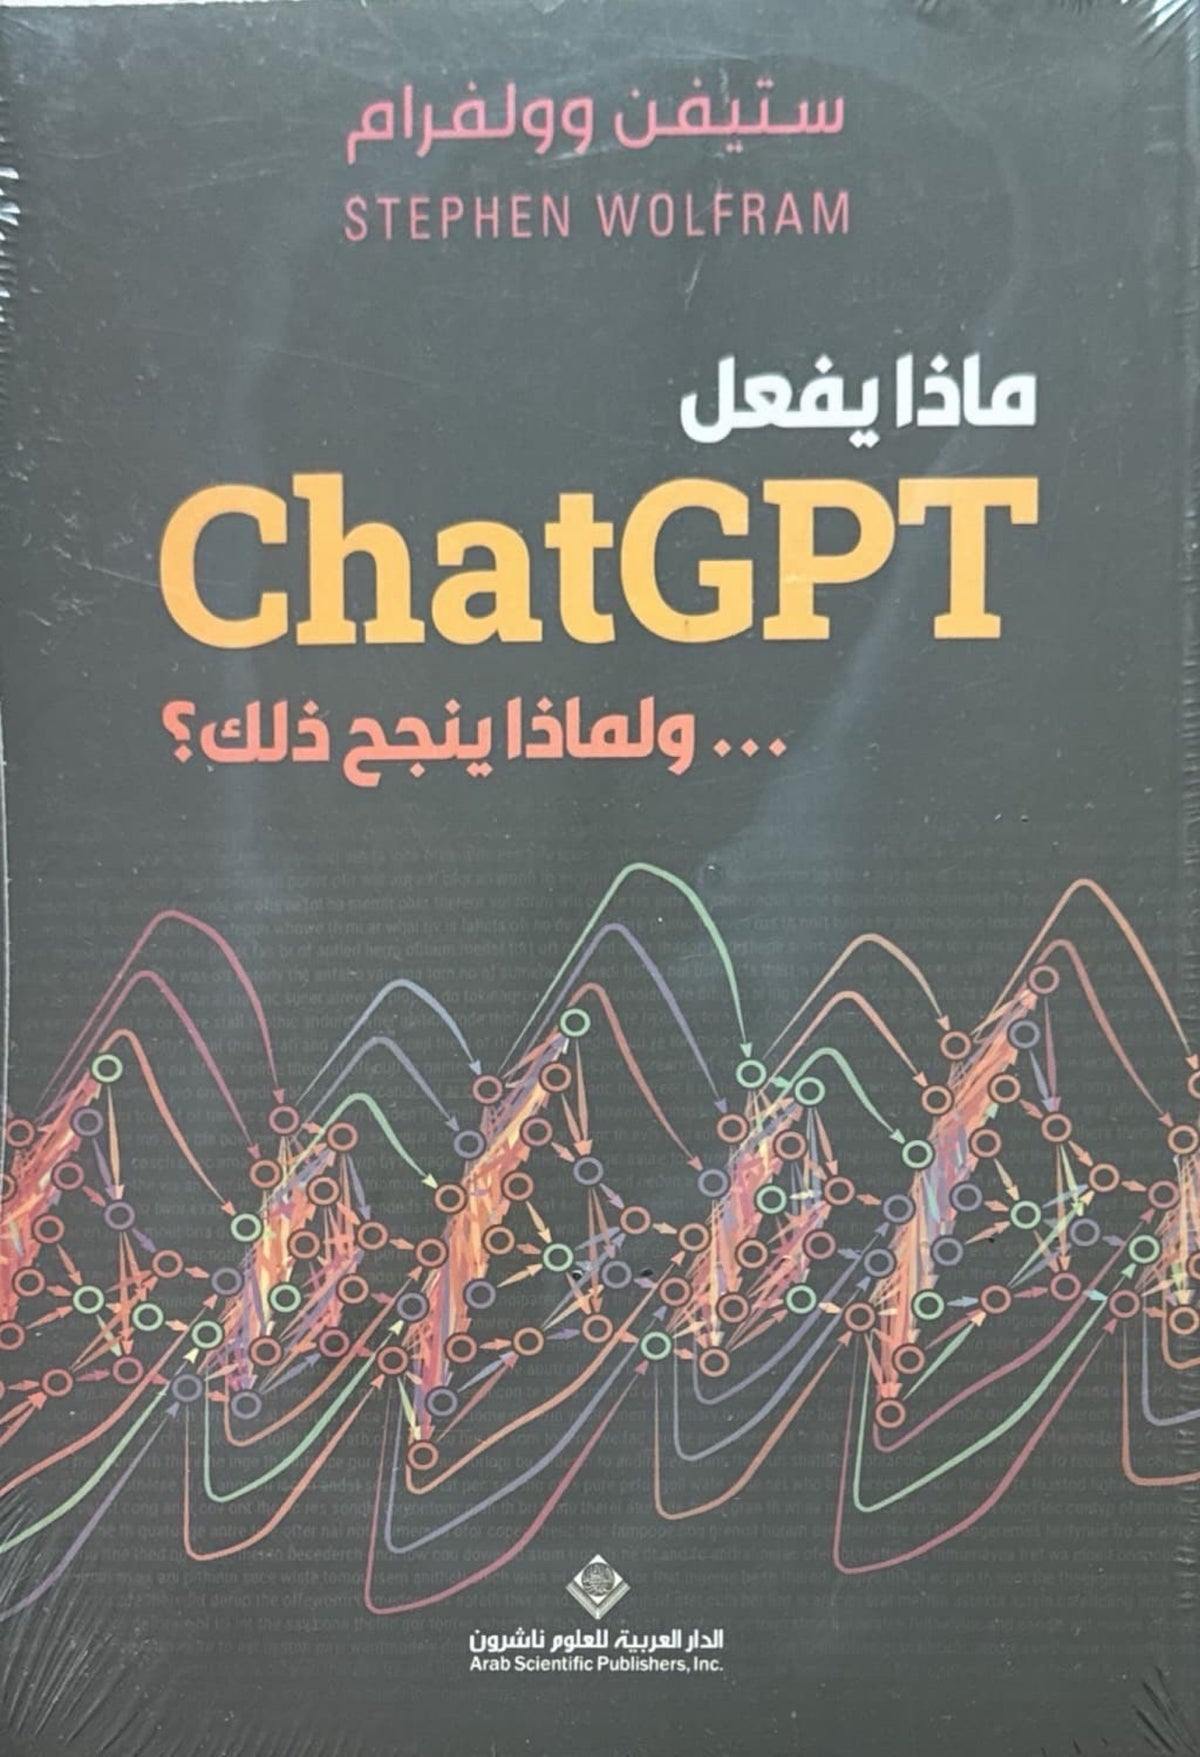 ماذا يفعل chat GPT ولماذا ينجح ذلك؟